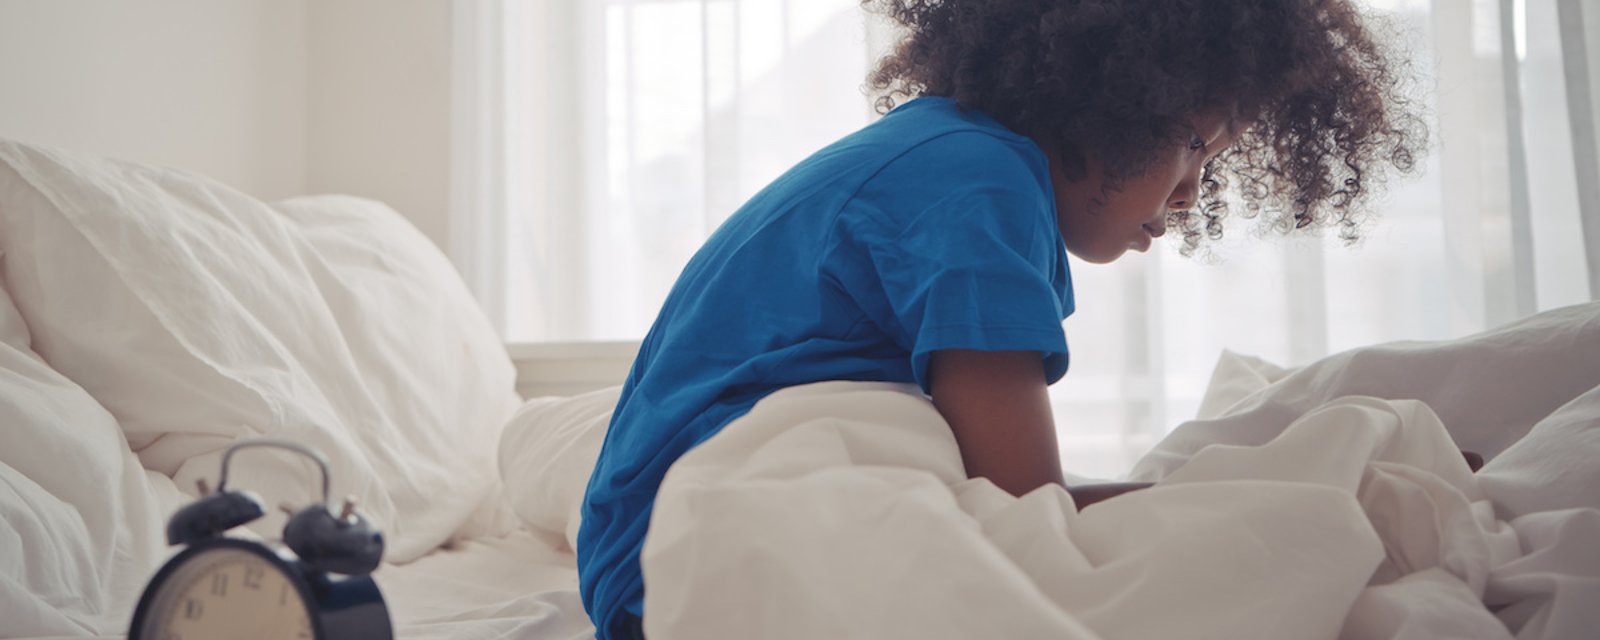 5 trucs pour réveiller les enfants récalcitrants et rendre vos matins moins difficiles